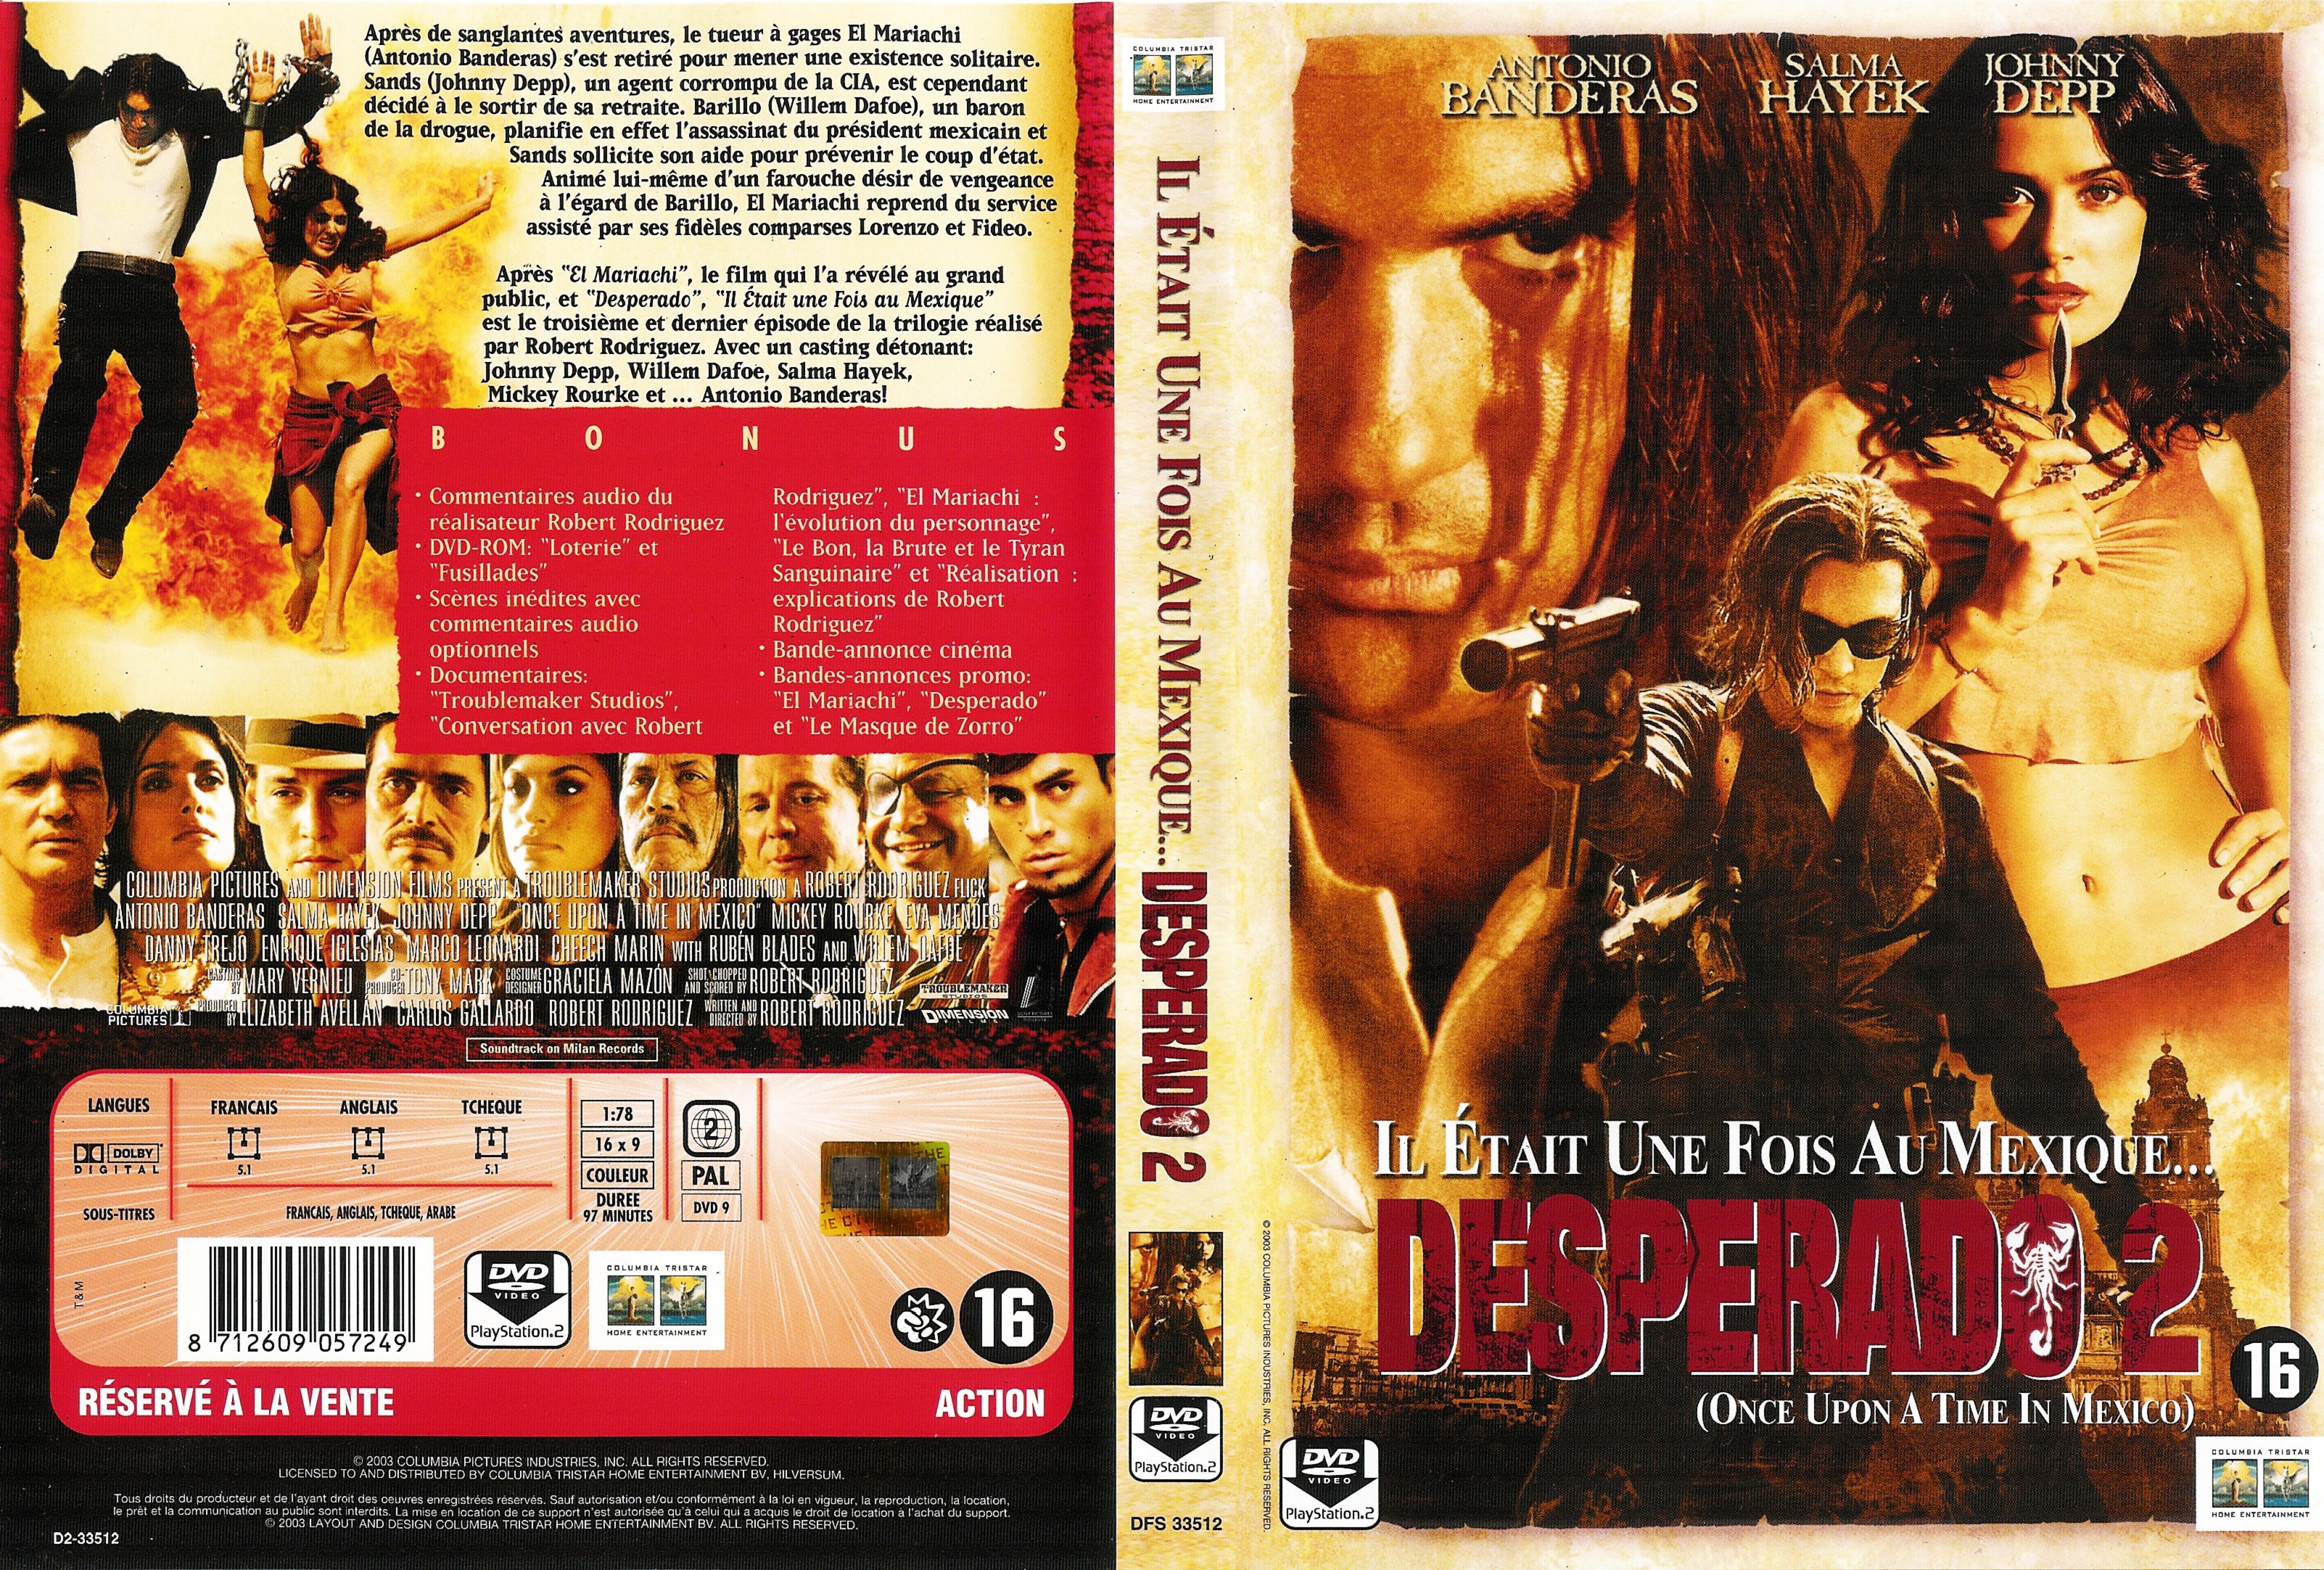 Jaquette DVD Desperado 2 v2